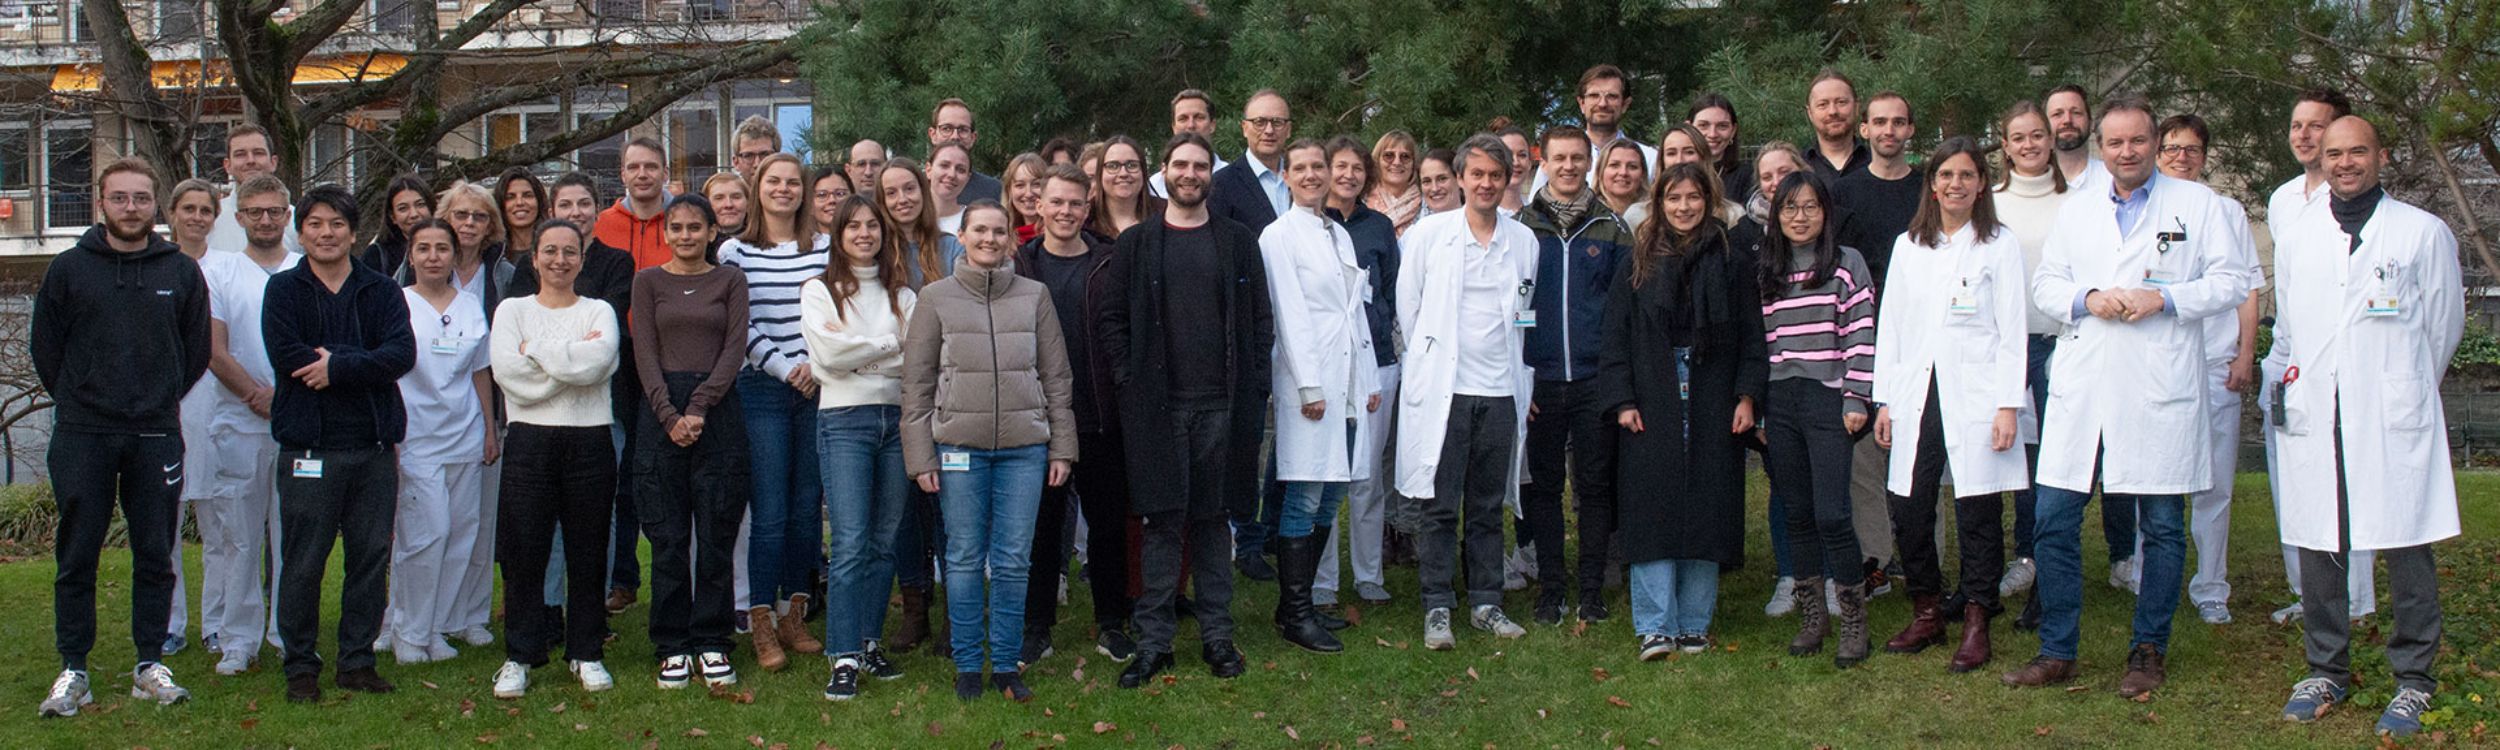 Ein Gruppenfoto der Mitarbeitenden der Onkologie